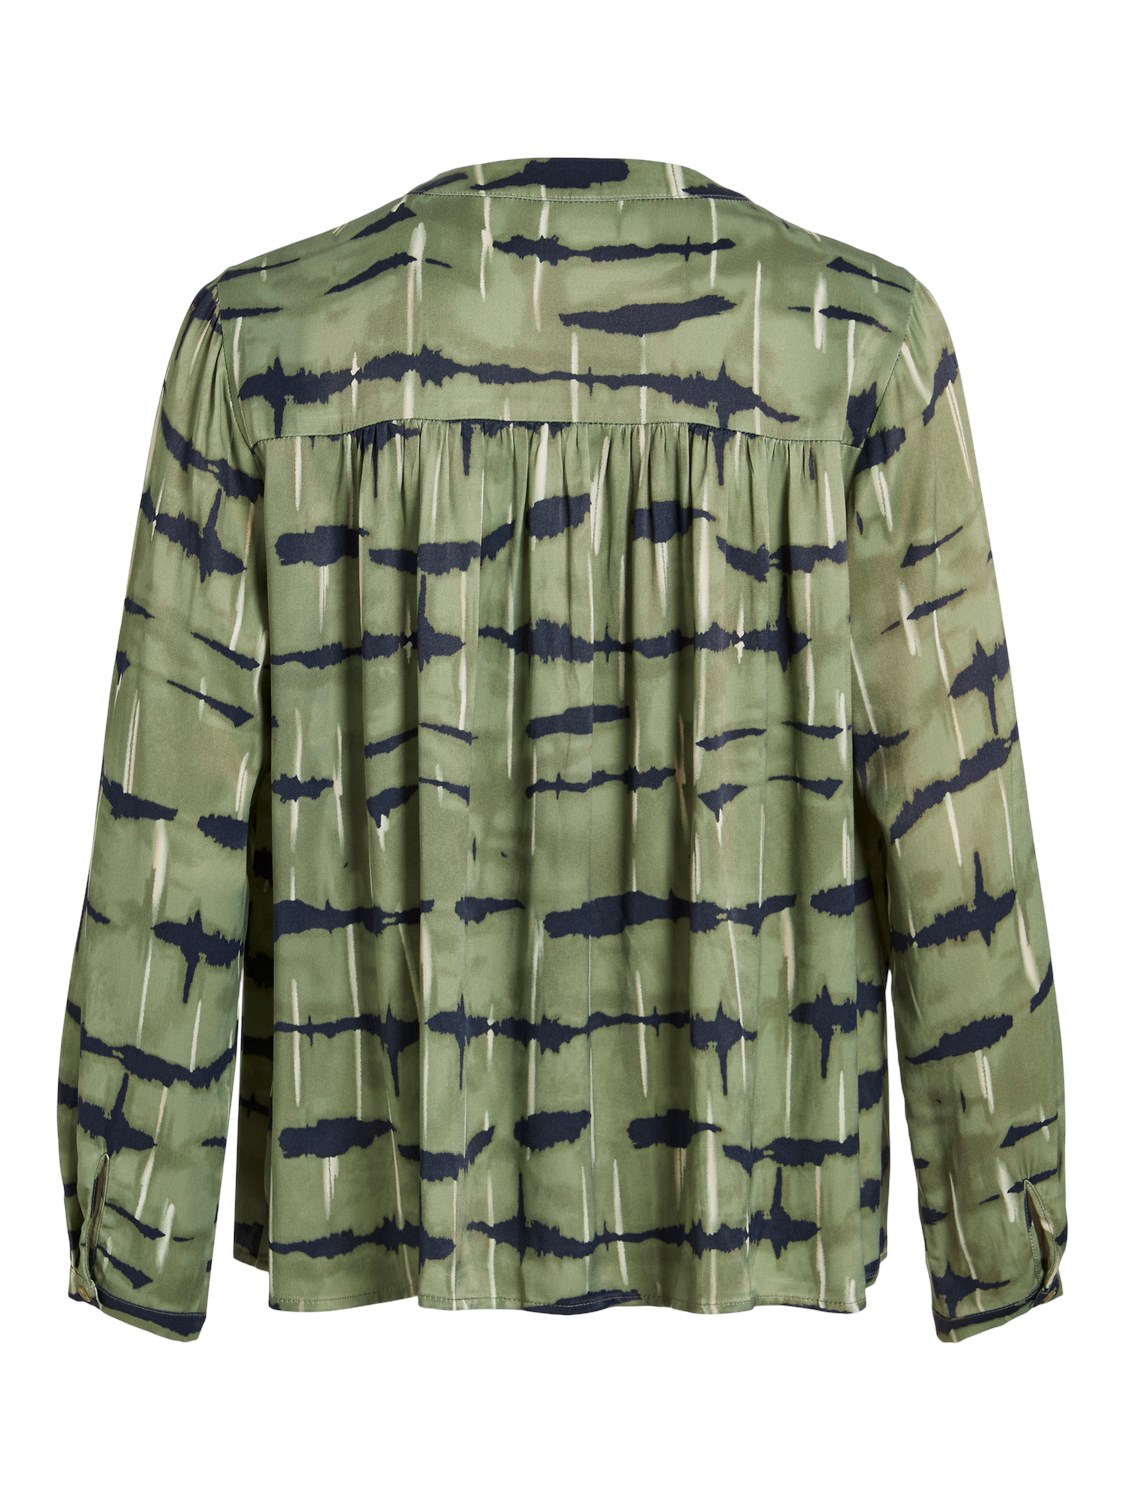 Blusa Malo satinada en color verde jaspeado. Modelo 14094233 de vila.